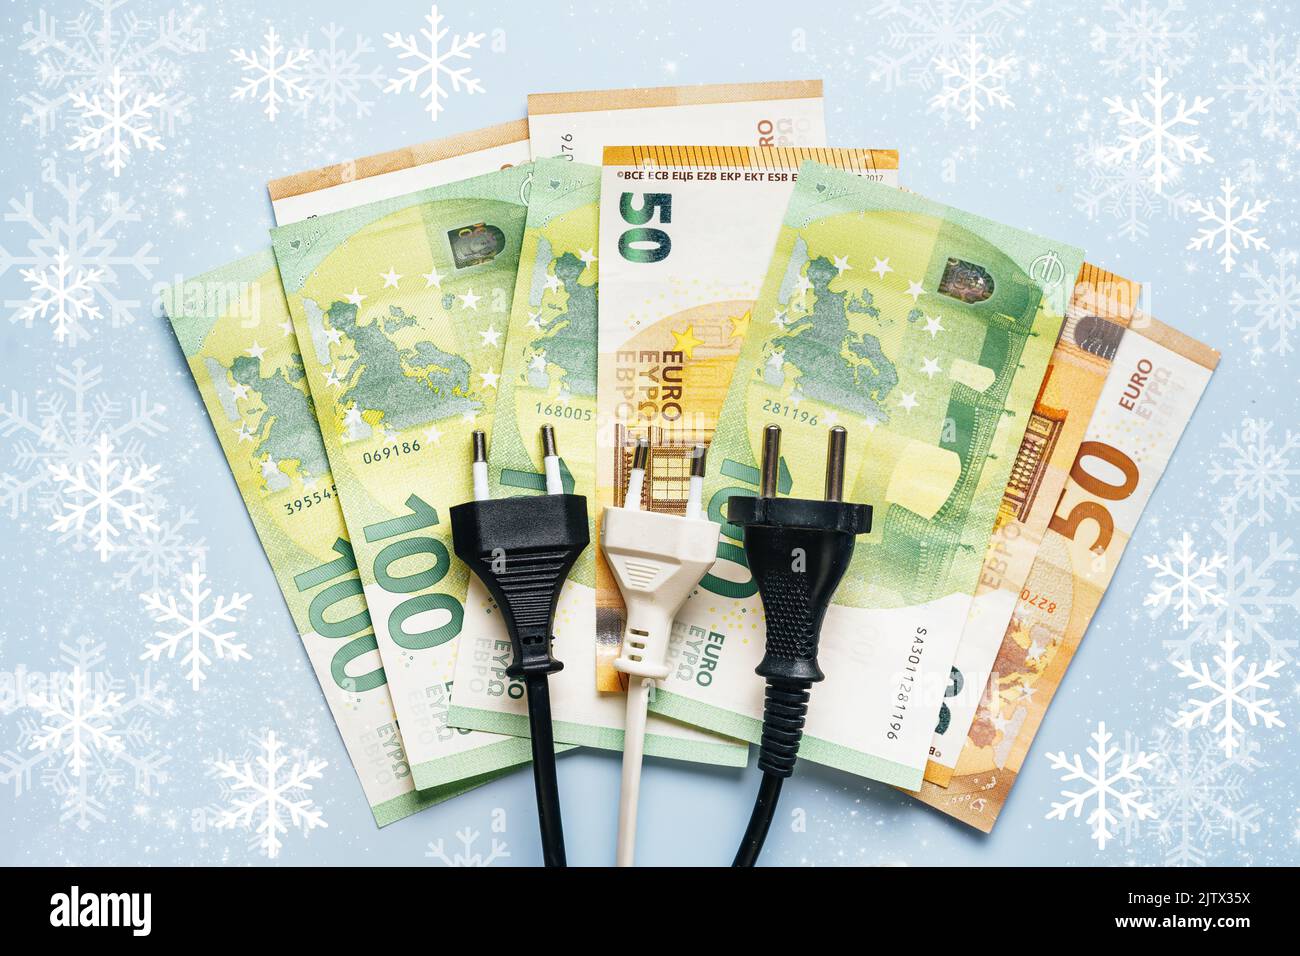 La spina elettrica si trova sulle banconote in euro che mostrano l'inflazione drastica sui costi dell'elettricità in inverno. Il concetto di crisi energetica in Europa. Vista dall'alto. Sfondo blu con fiocchi di neve Foto Stock